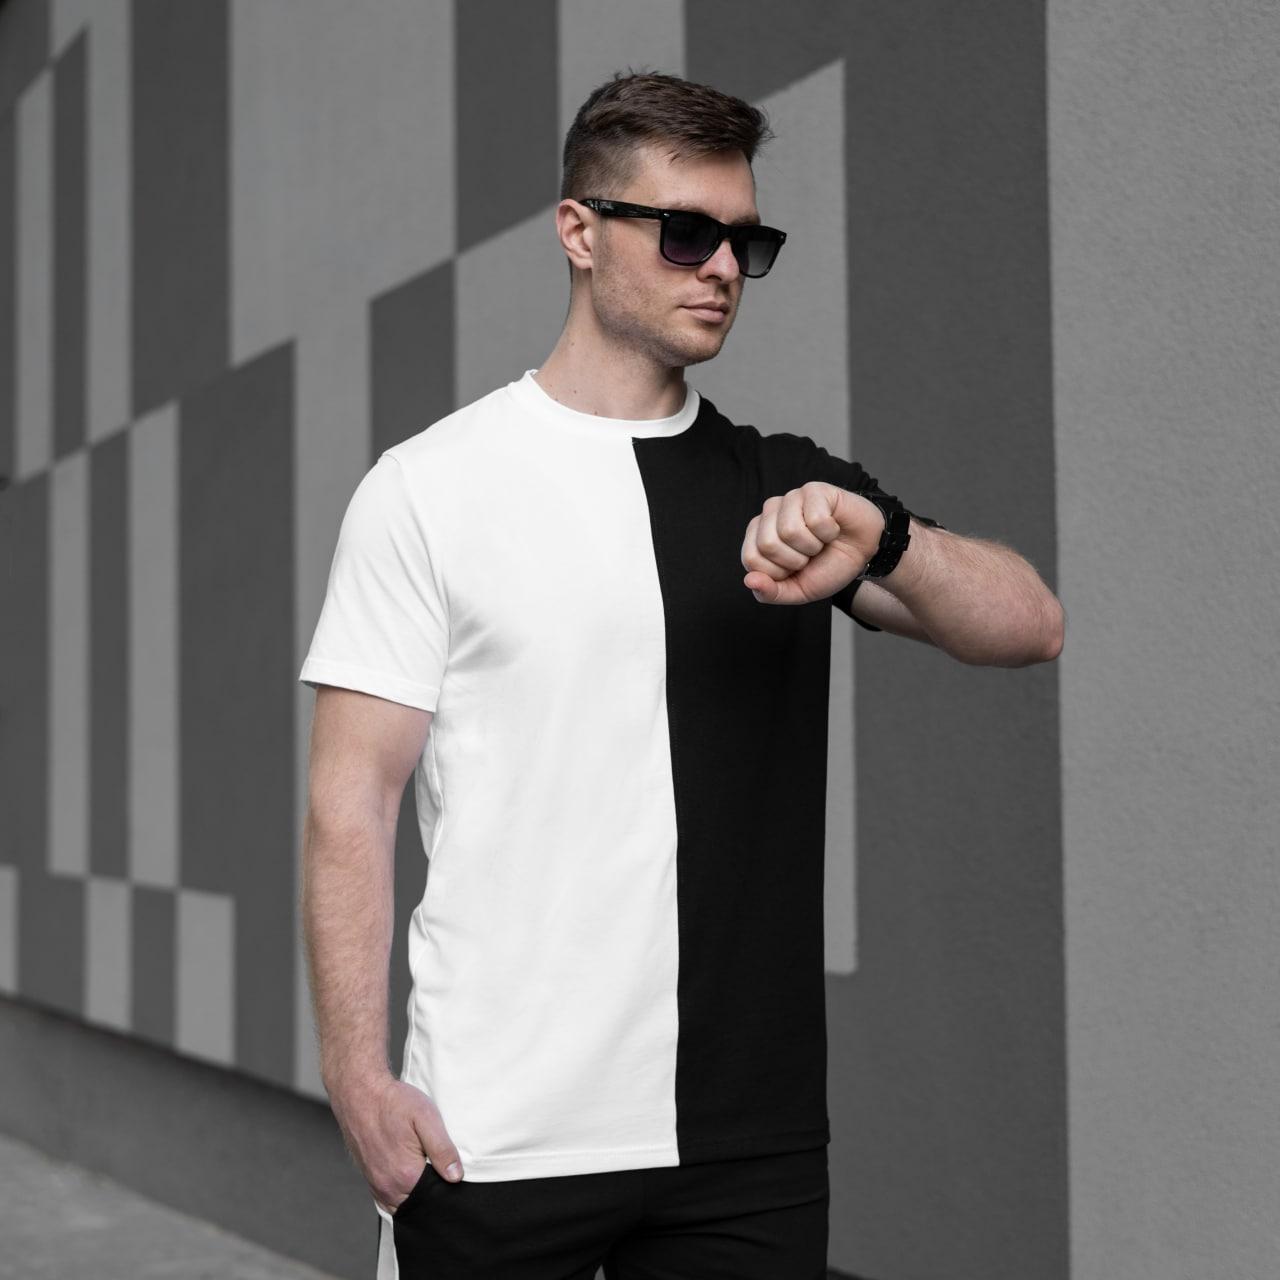 Чоловіча двокольорова футболка S M L XL 2XL 3XL(46 48 50 52 54 56) трикотажна чорно-біла